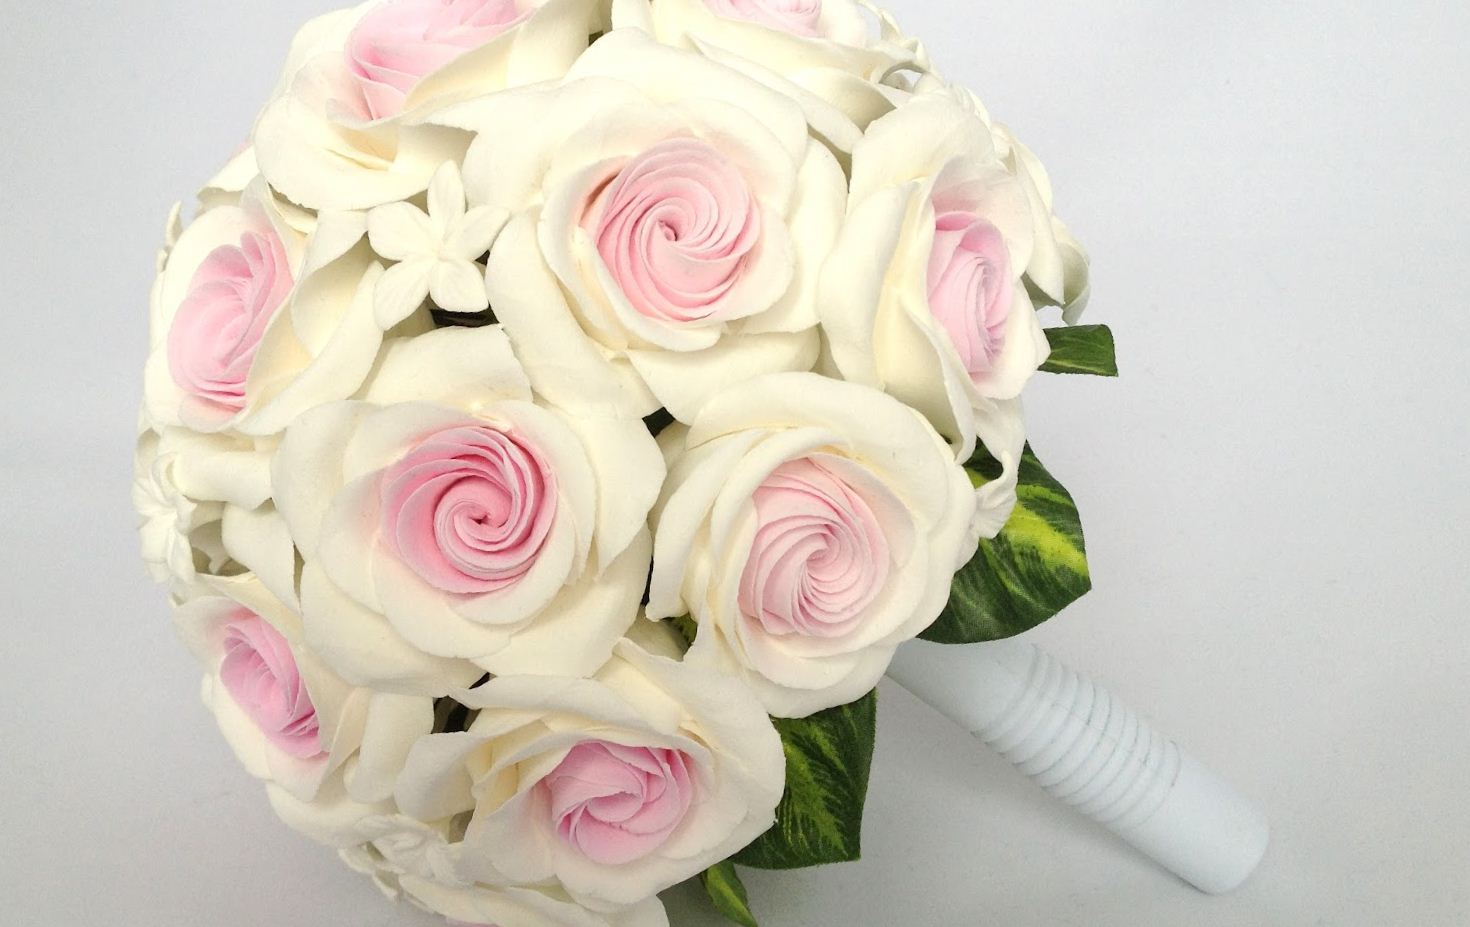 下载手机图片 假期 植物 花卉 玫瑰 花束 婚礼 免费